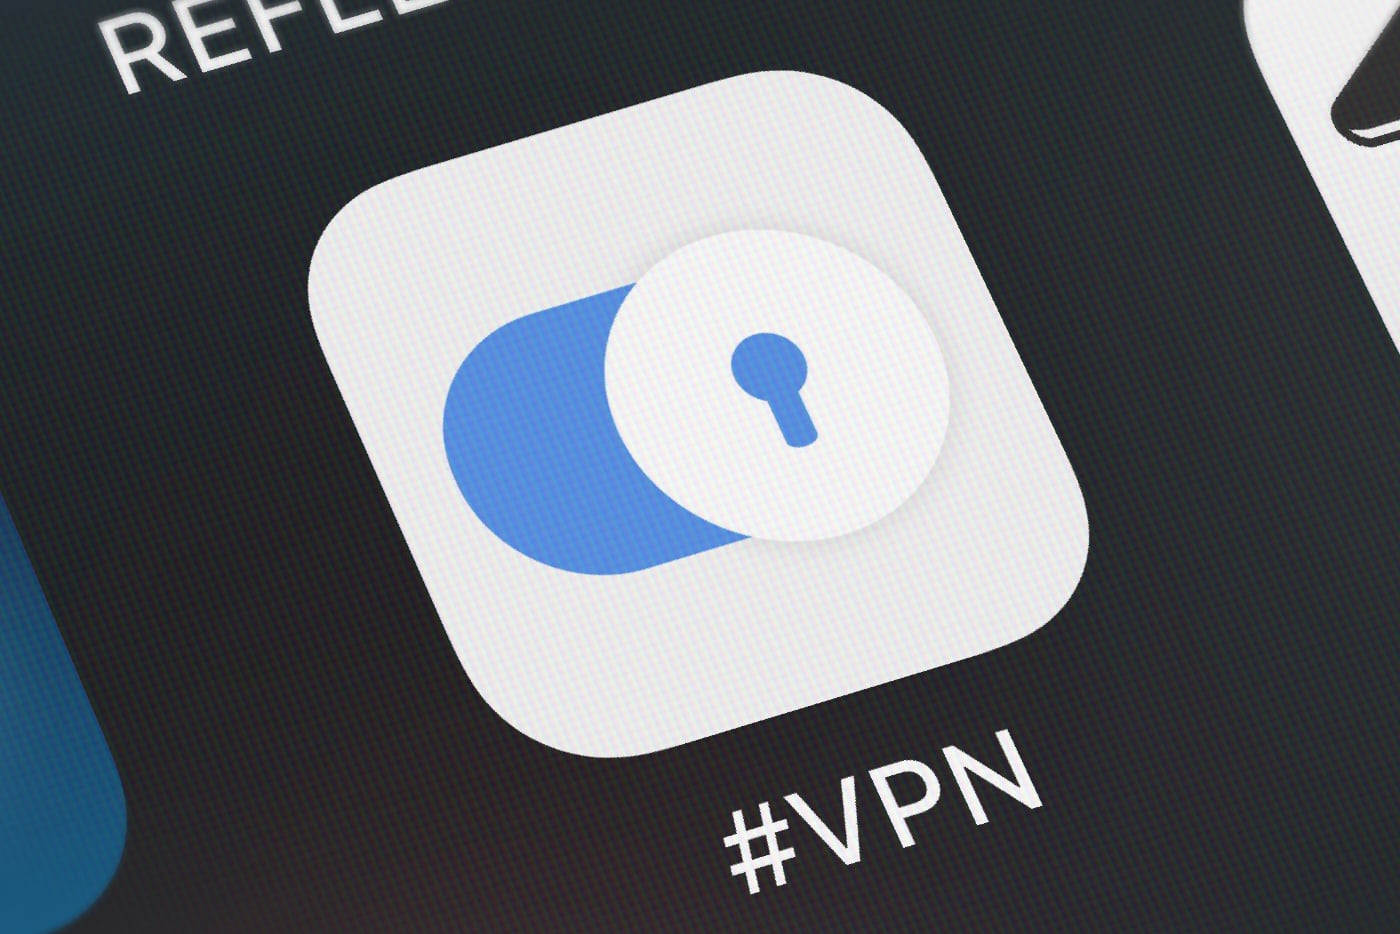 Как на iPhone сделать умный VPN. Он будет включаться сам и только для отдельных сайтов и приложений